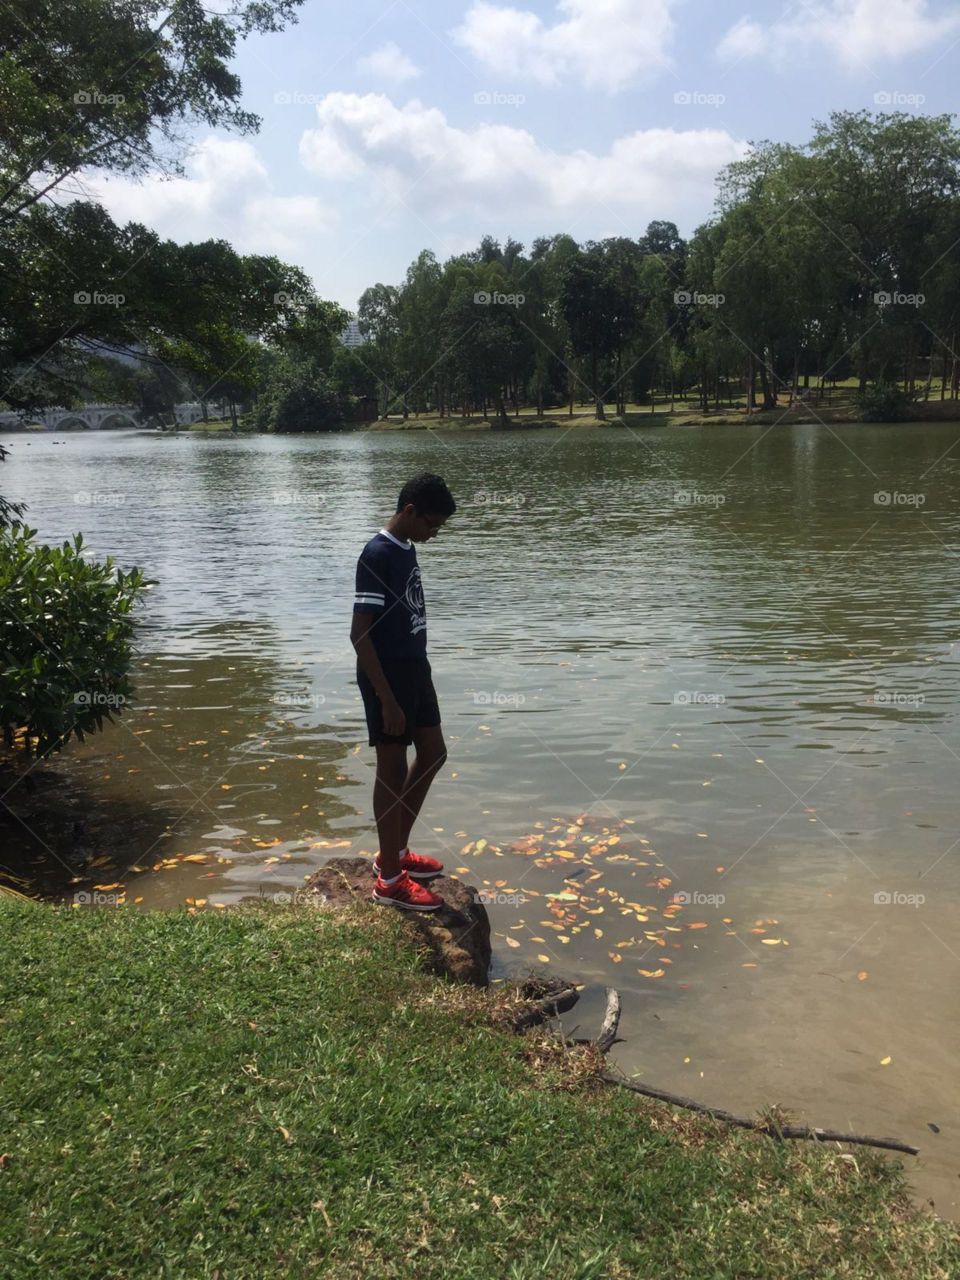 A boy looking at the lake